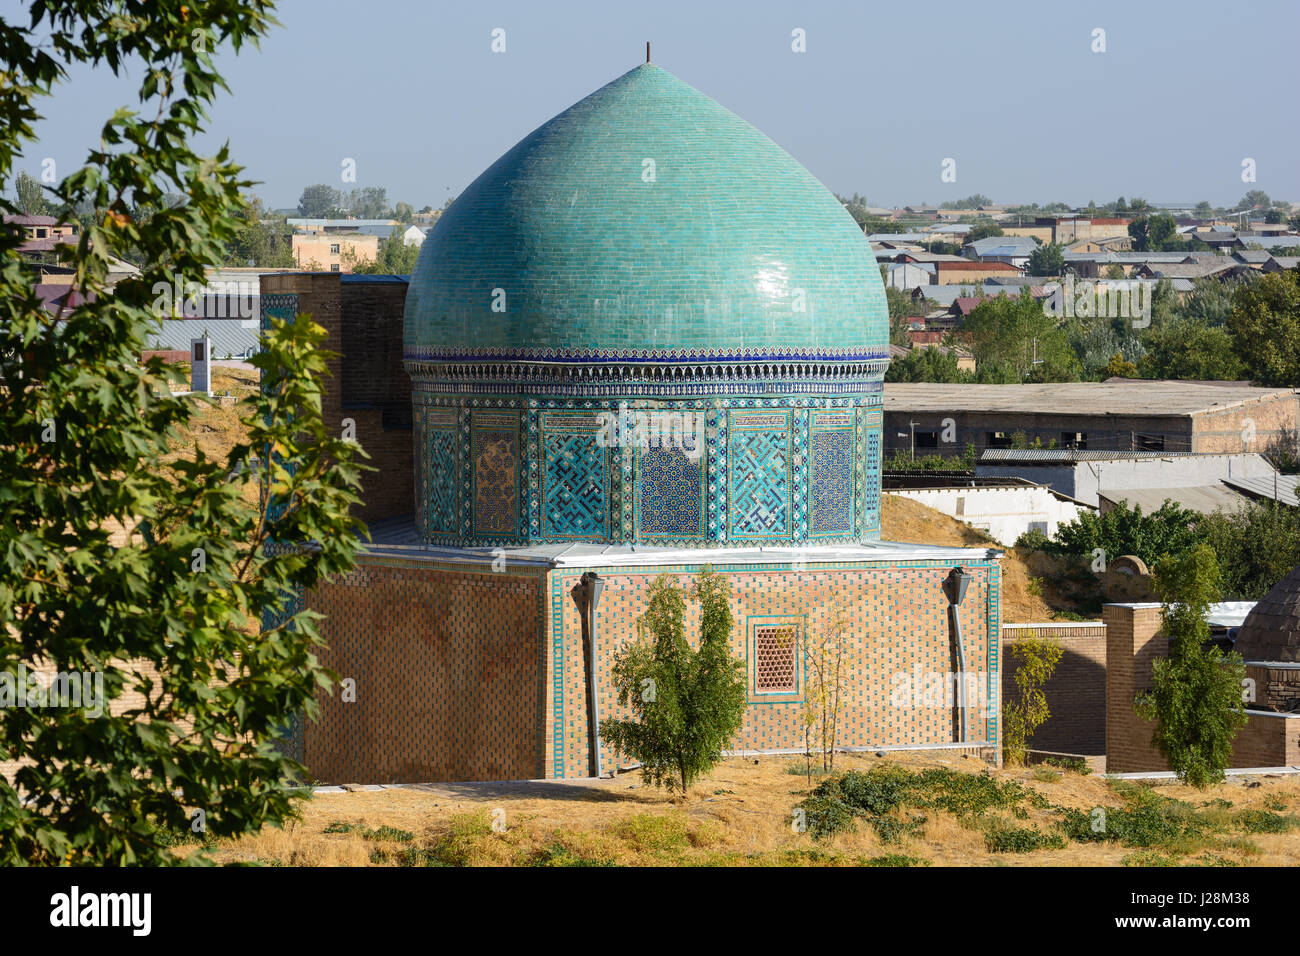 L'Ouzbékistan, Samarkand, ville grave Shohizinda, plus importante nécropole de l'Asie centrale à partir de la 9e - 19e, du patrimoine culturel mondial de l'UNESCO Banque D'Images